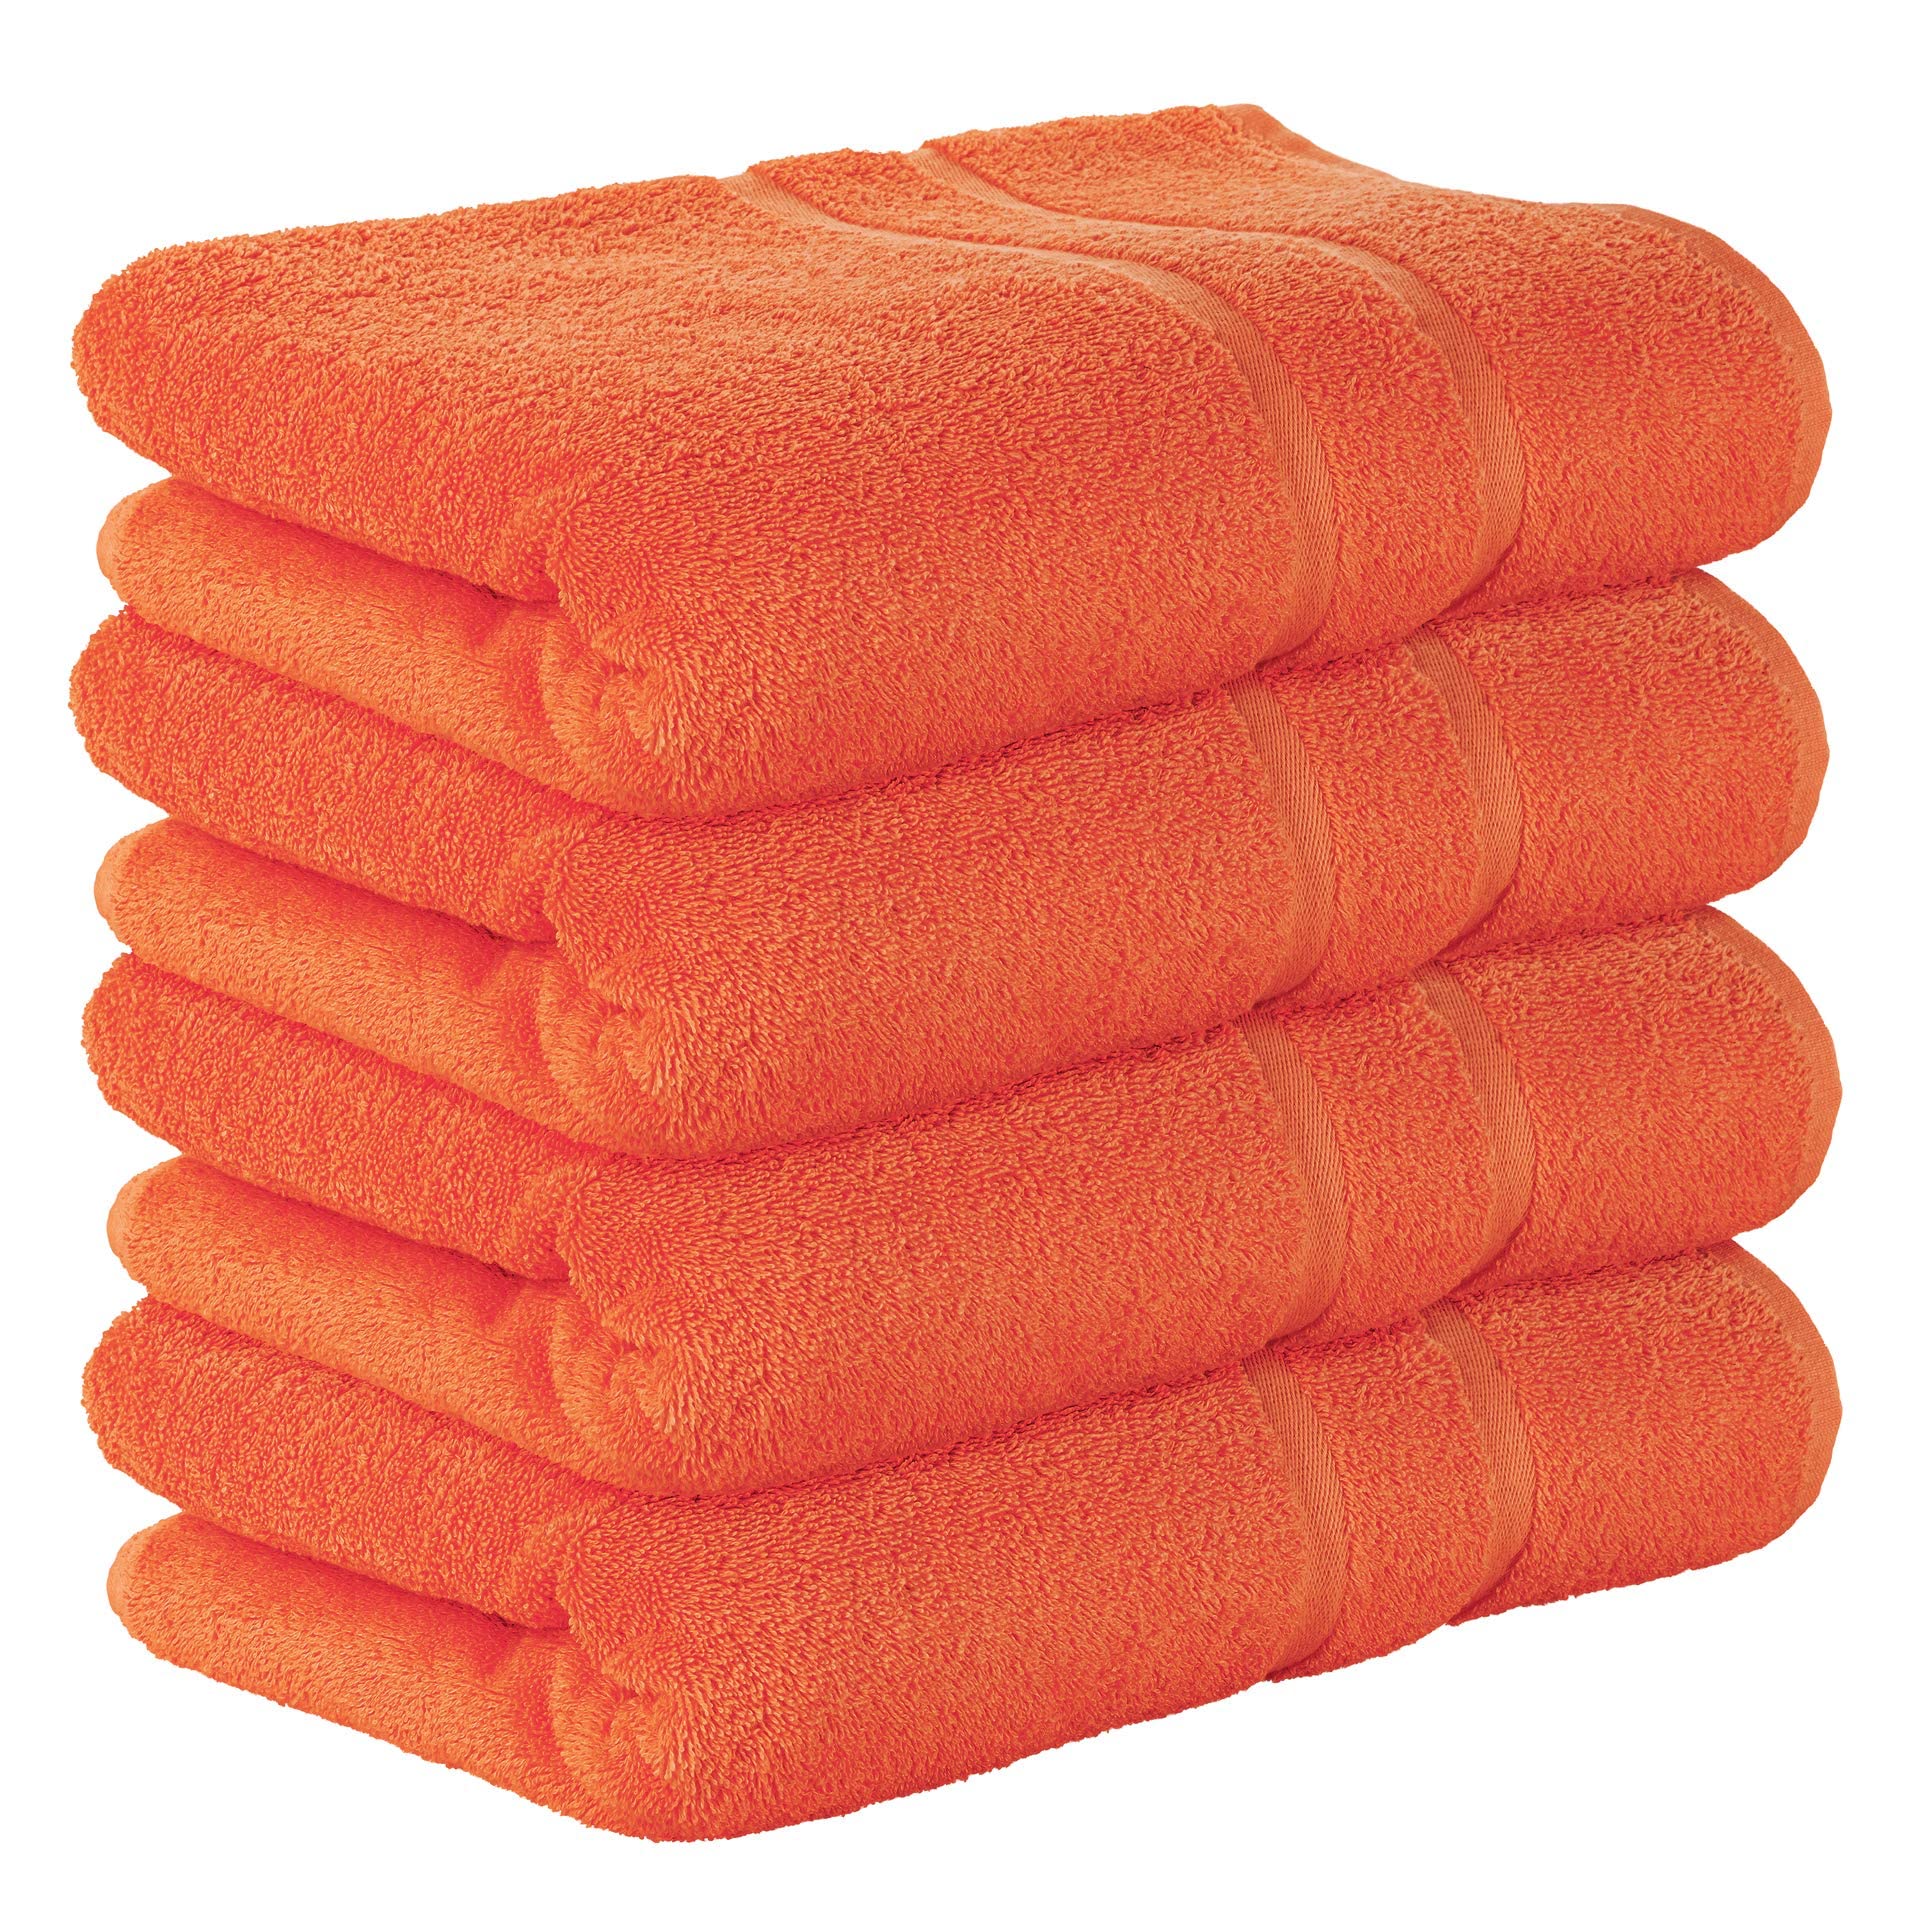 StickandShine 4er Set Premium Frottee Badetuch 100x150 cm in orange in 500g/m² aus 100% Baumwolle